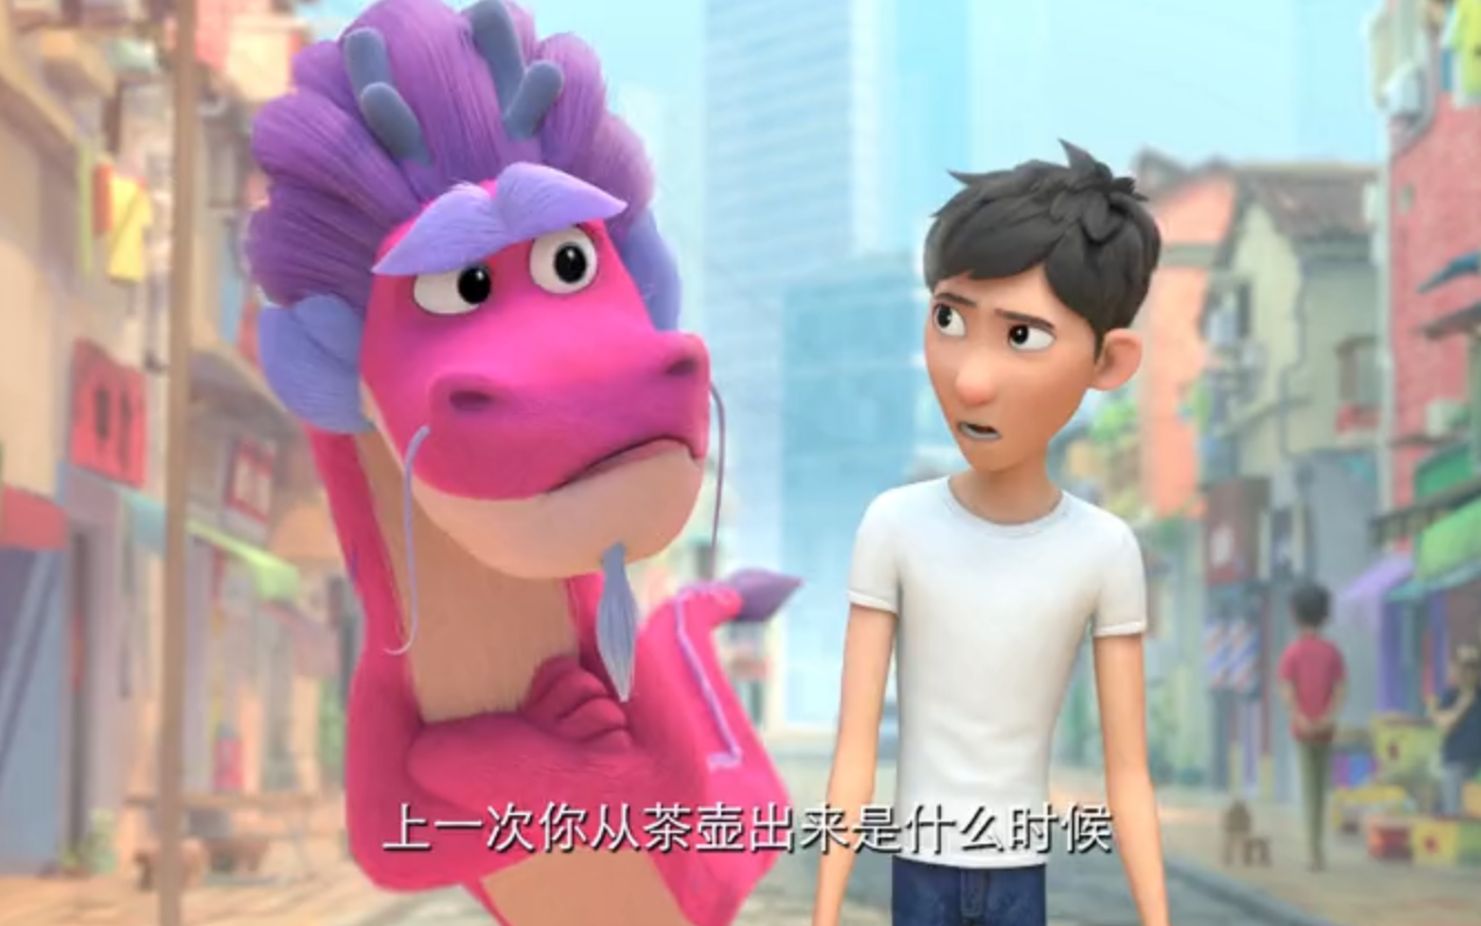 成龙制片和配音中美合拍动画电影许愿神龙曝光首款中文预告粉色皮毛加